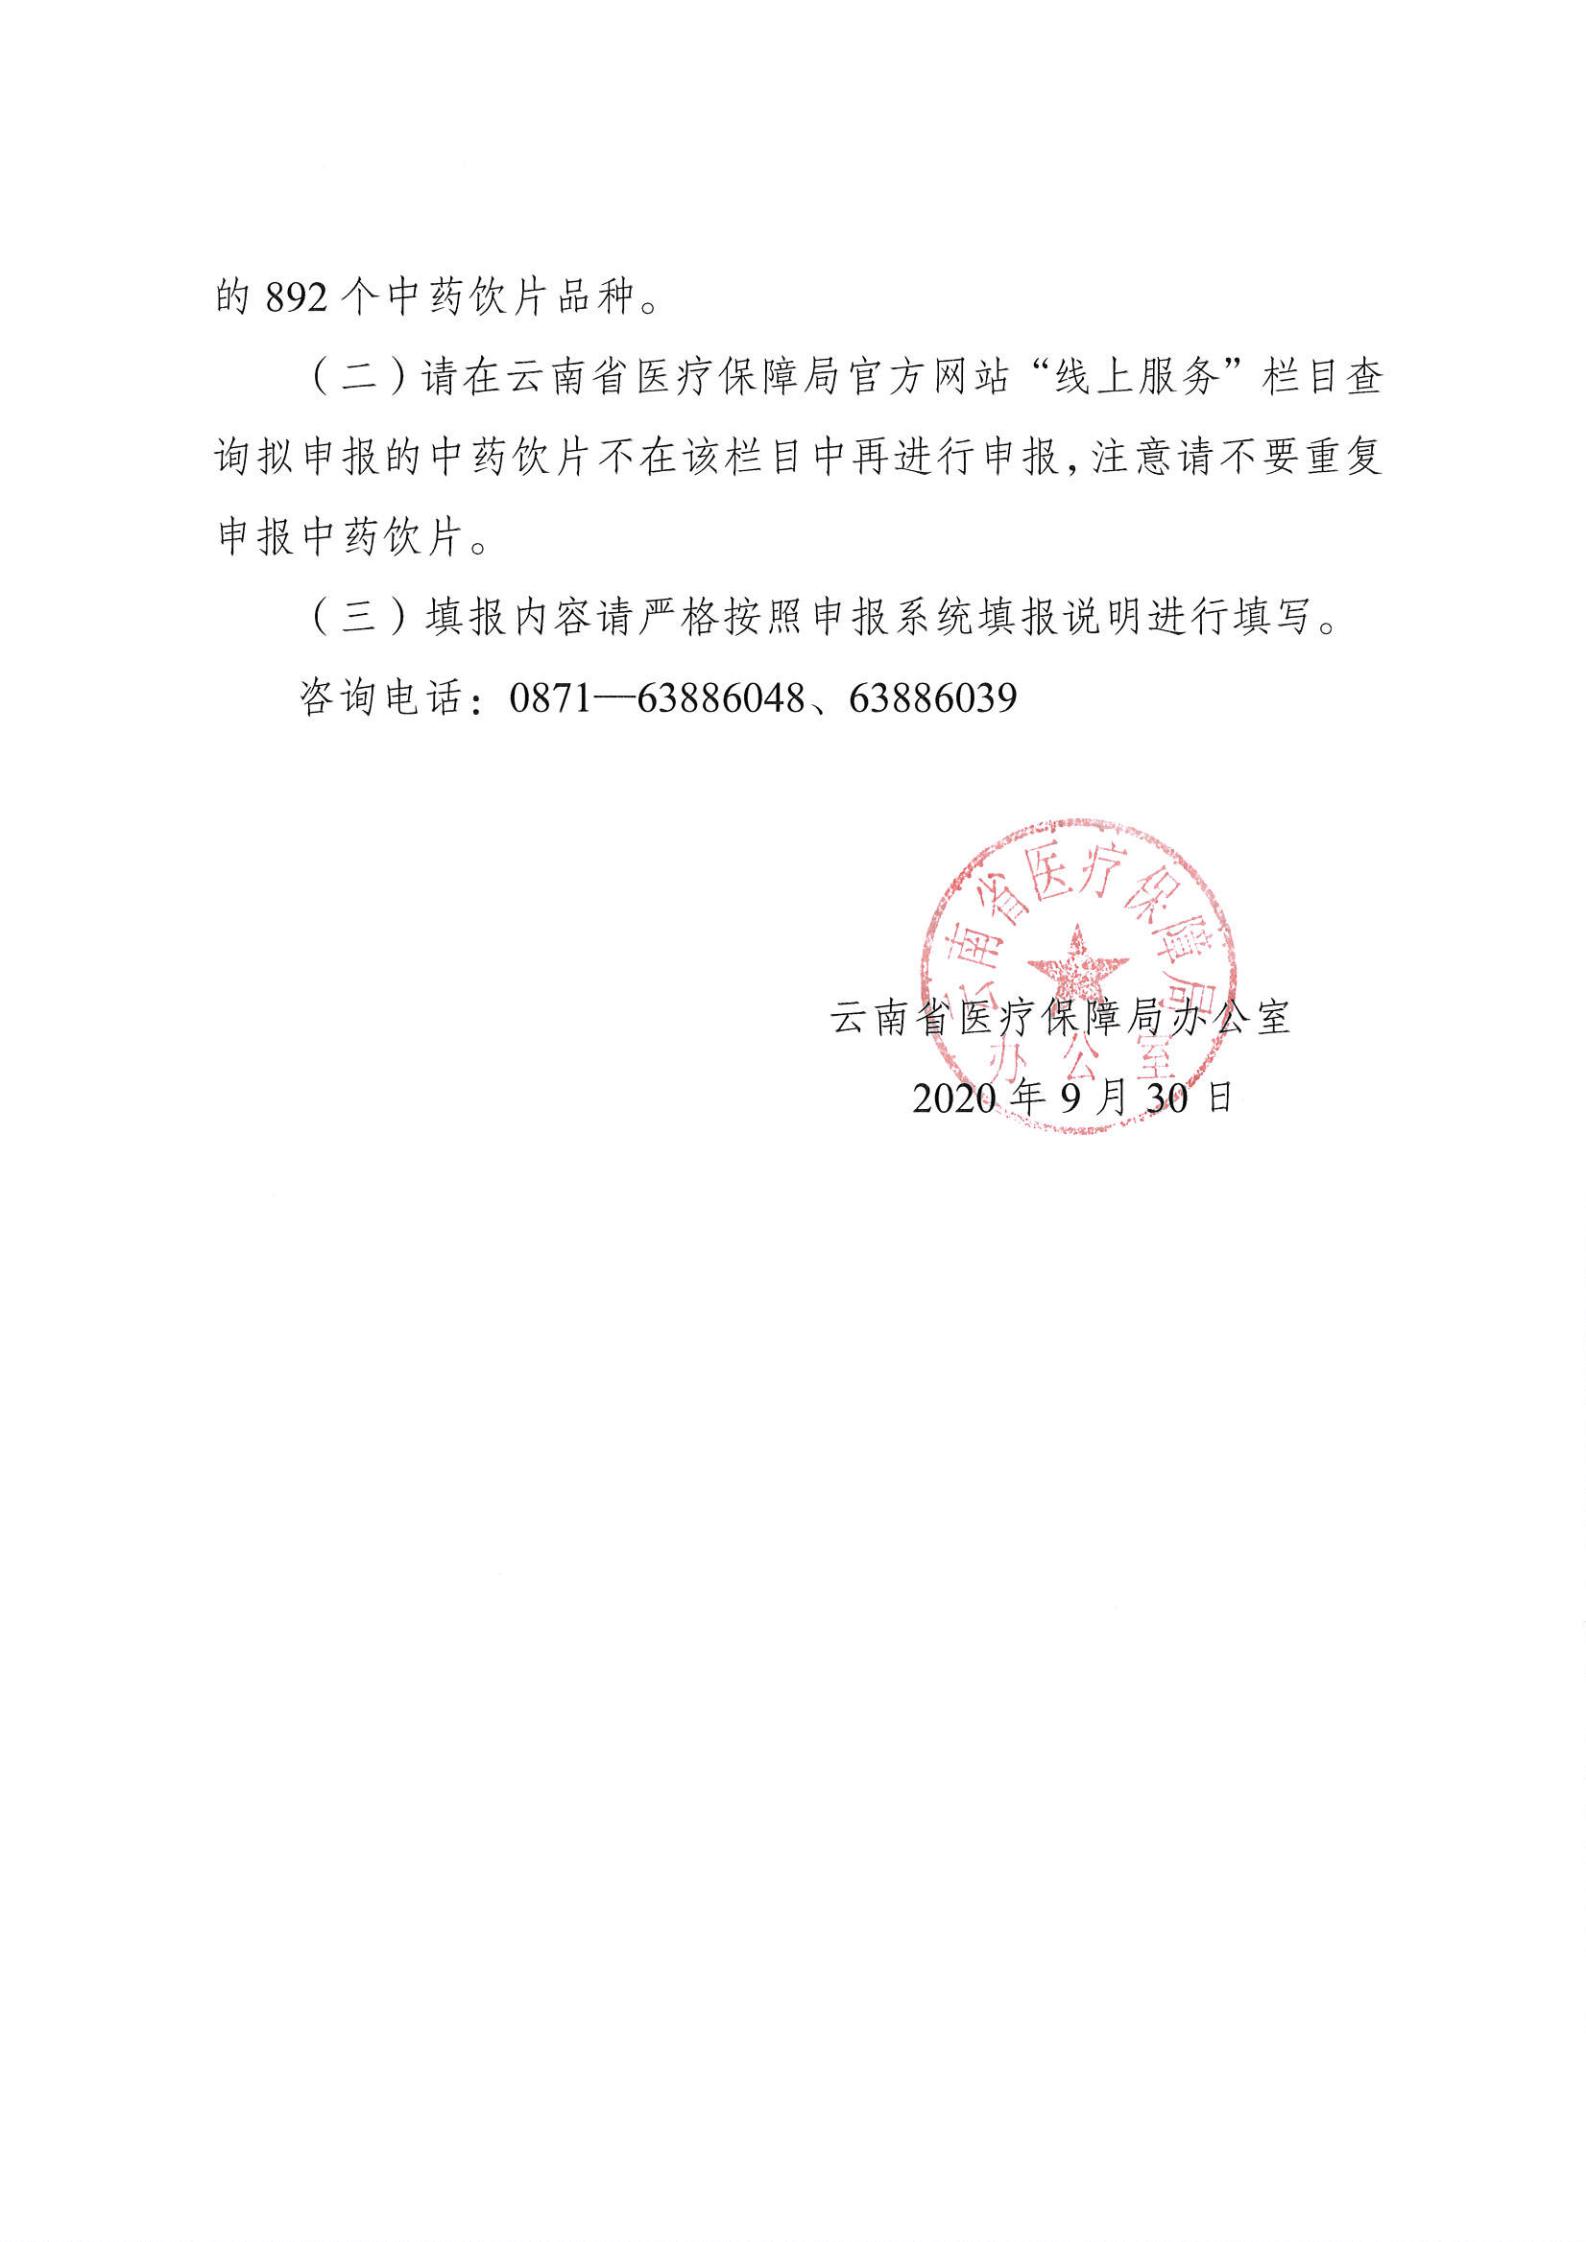 云南省医疗保障局办公室关于申报维护中药饮片数据信息的通知_01.jpg